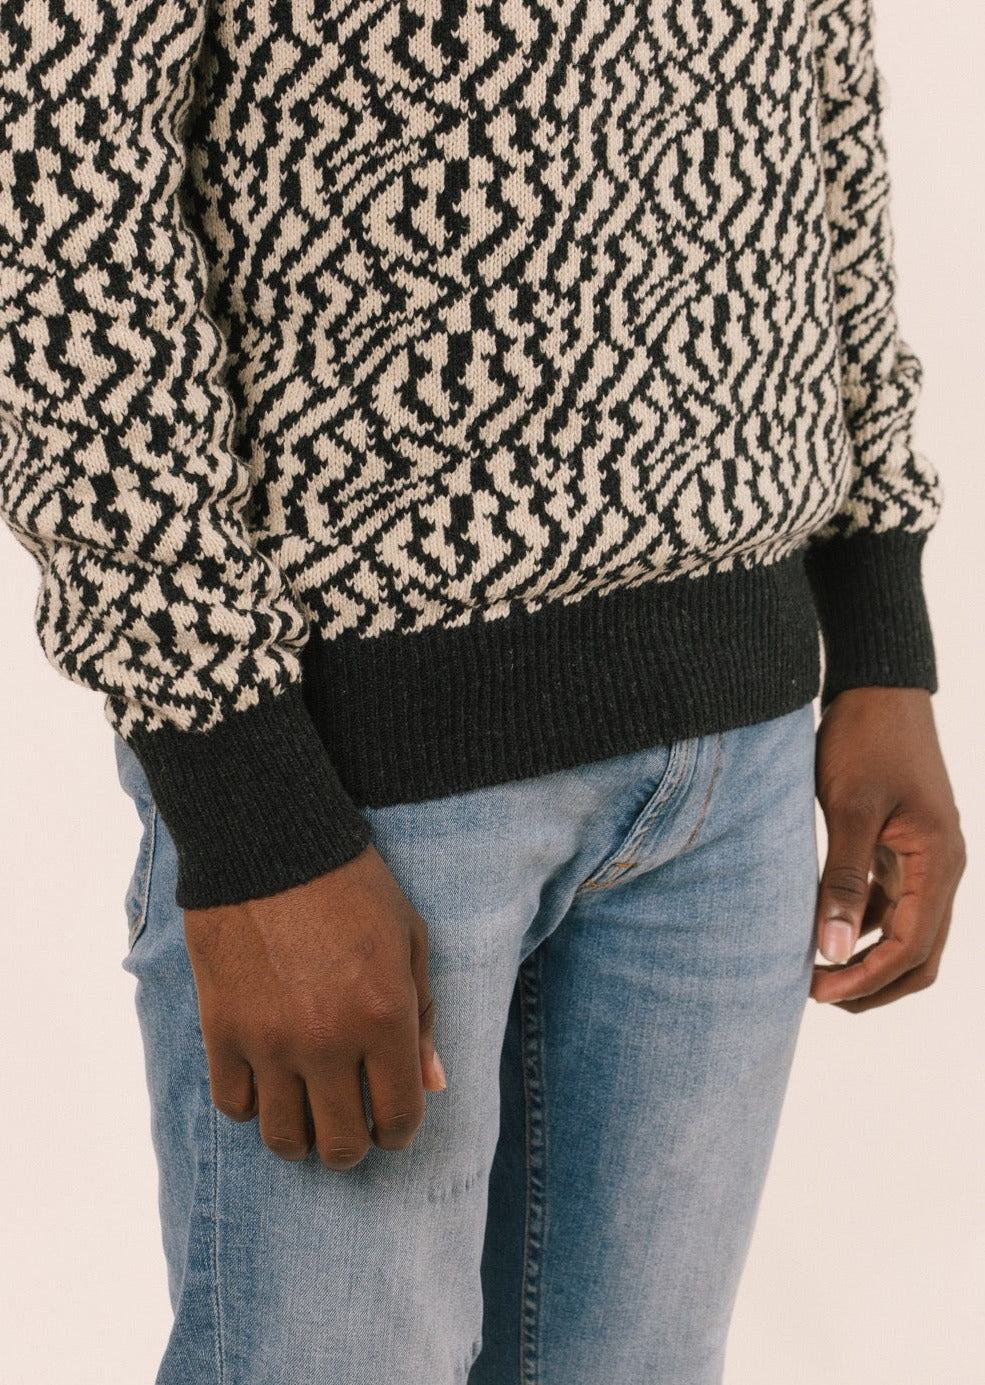 Detall de les mànigues del jersei. El patró o forma del jersei és la bàsica.